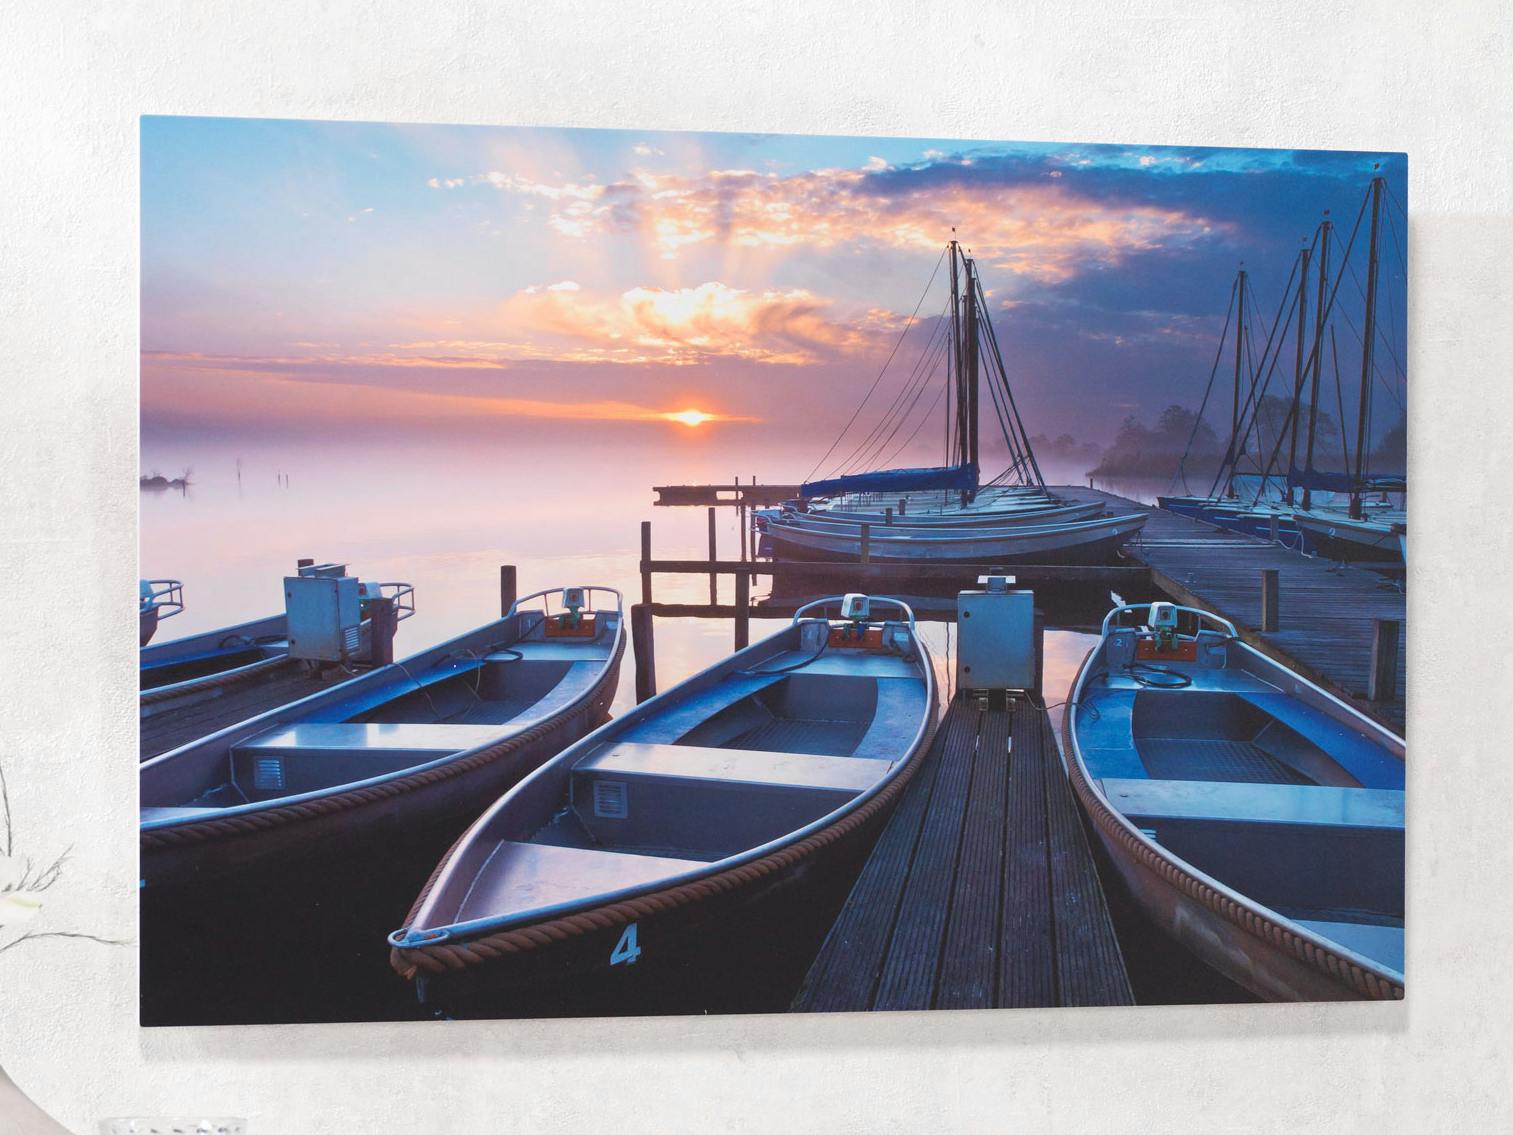 Tableau Forex avec une photo de barques sur un lac